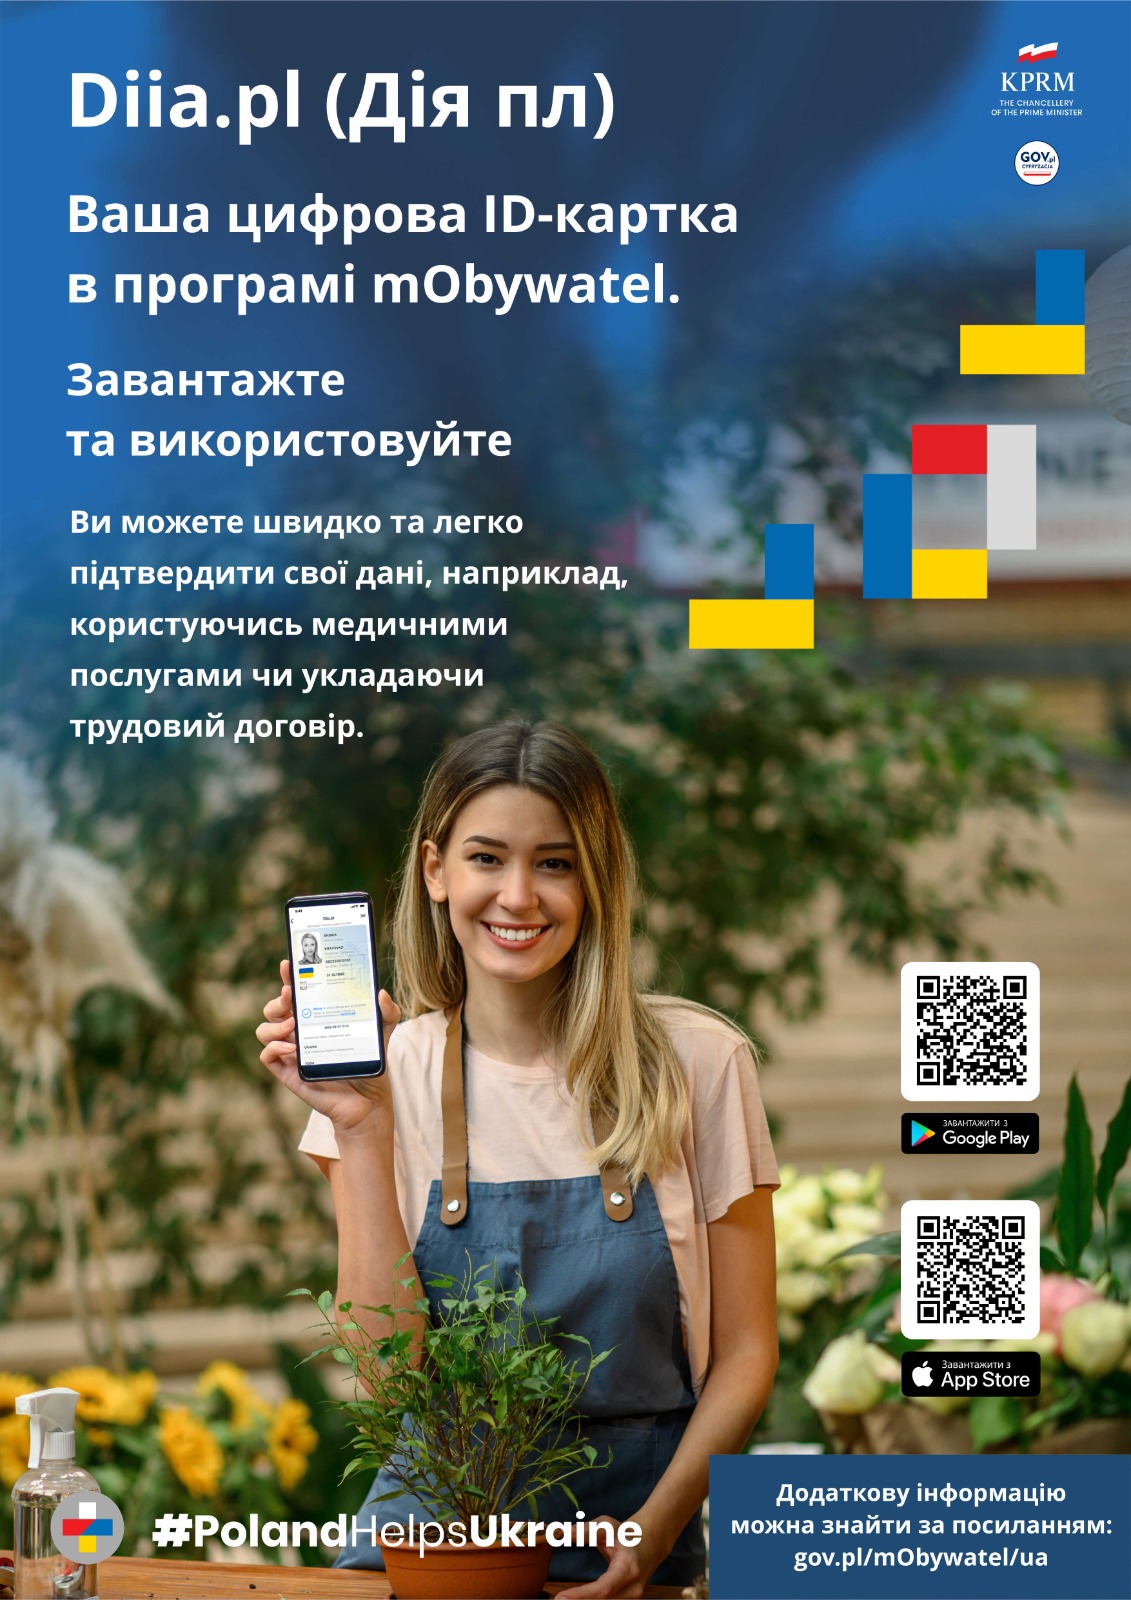 Diia.pl - Informacje dla obywateli Ukrainy